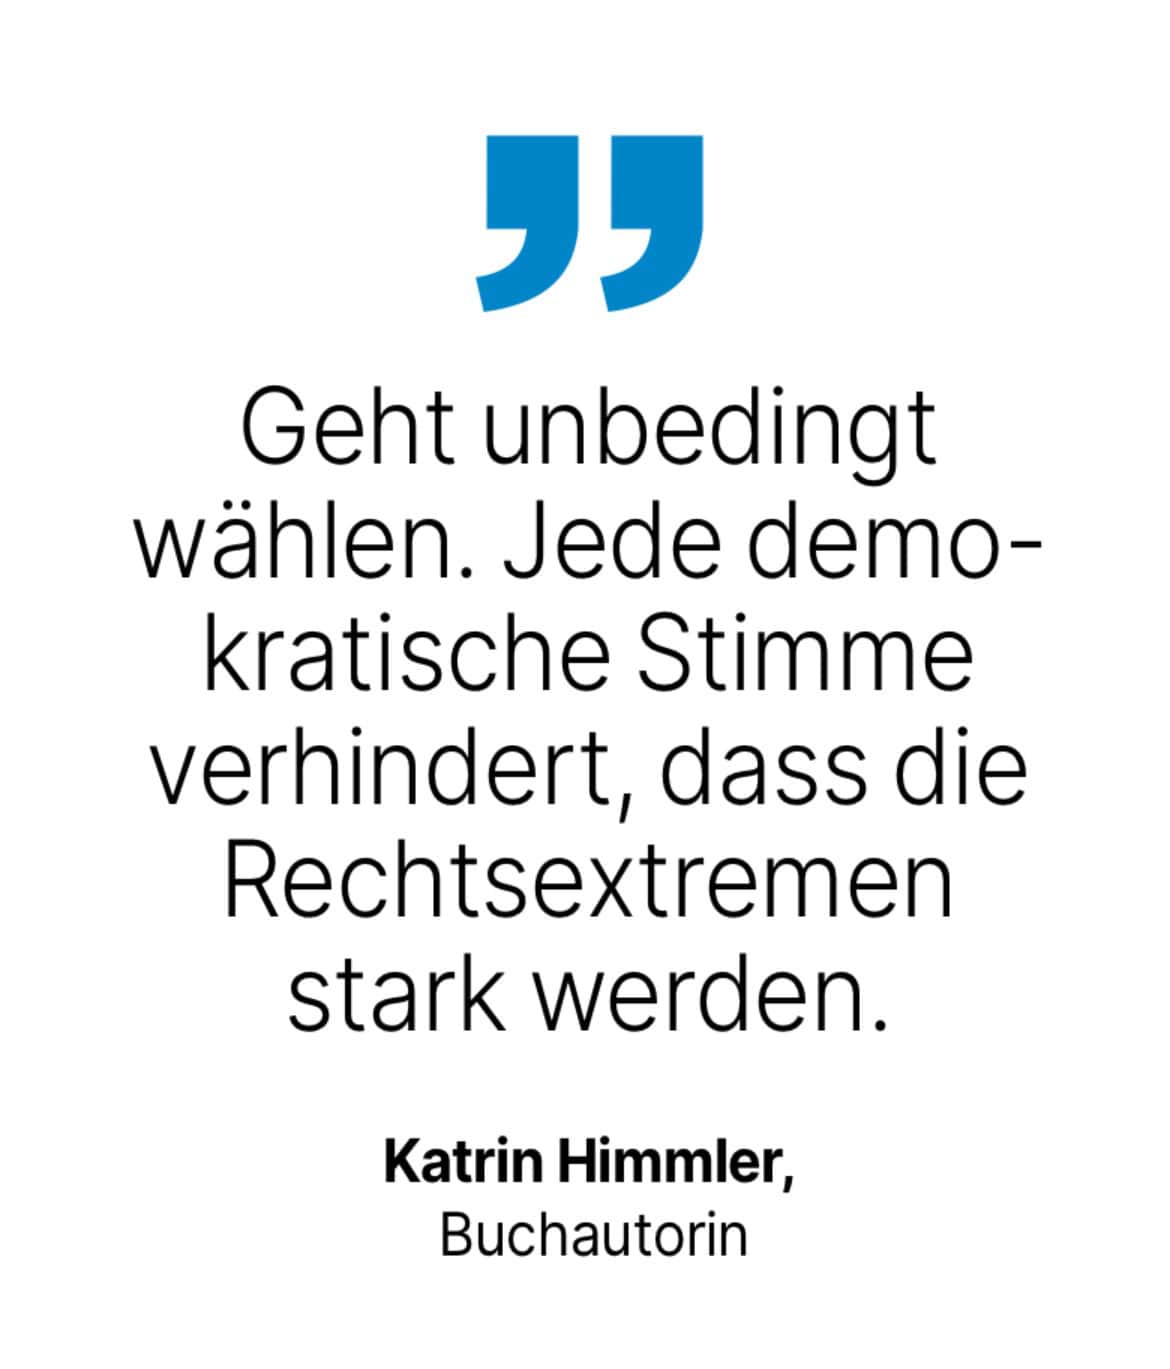 Katrin Himmler, Buchautorin: Geht unbedingt wählen. Jede demokratische Stimme verhindert, dass die Rechtsextremen stark werden.